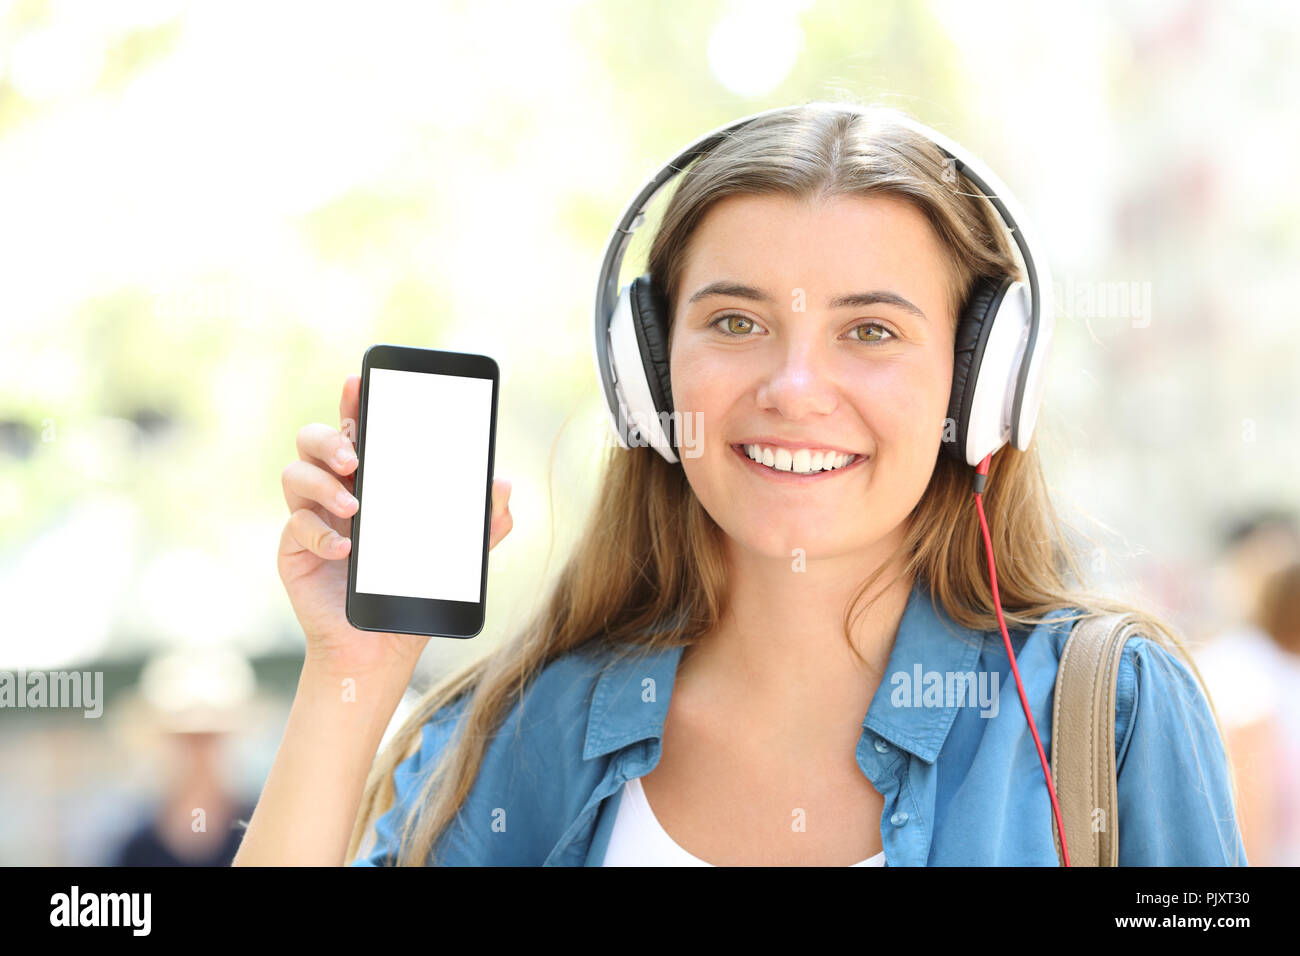 Vue avant portrait of a happy girl with headphones montrant l'écran du téléphone à puce vierges dans la rue Banque D'Images